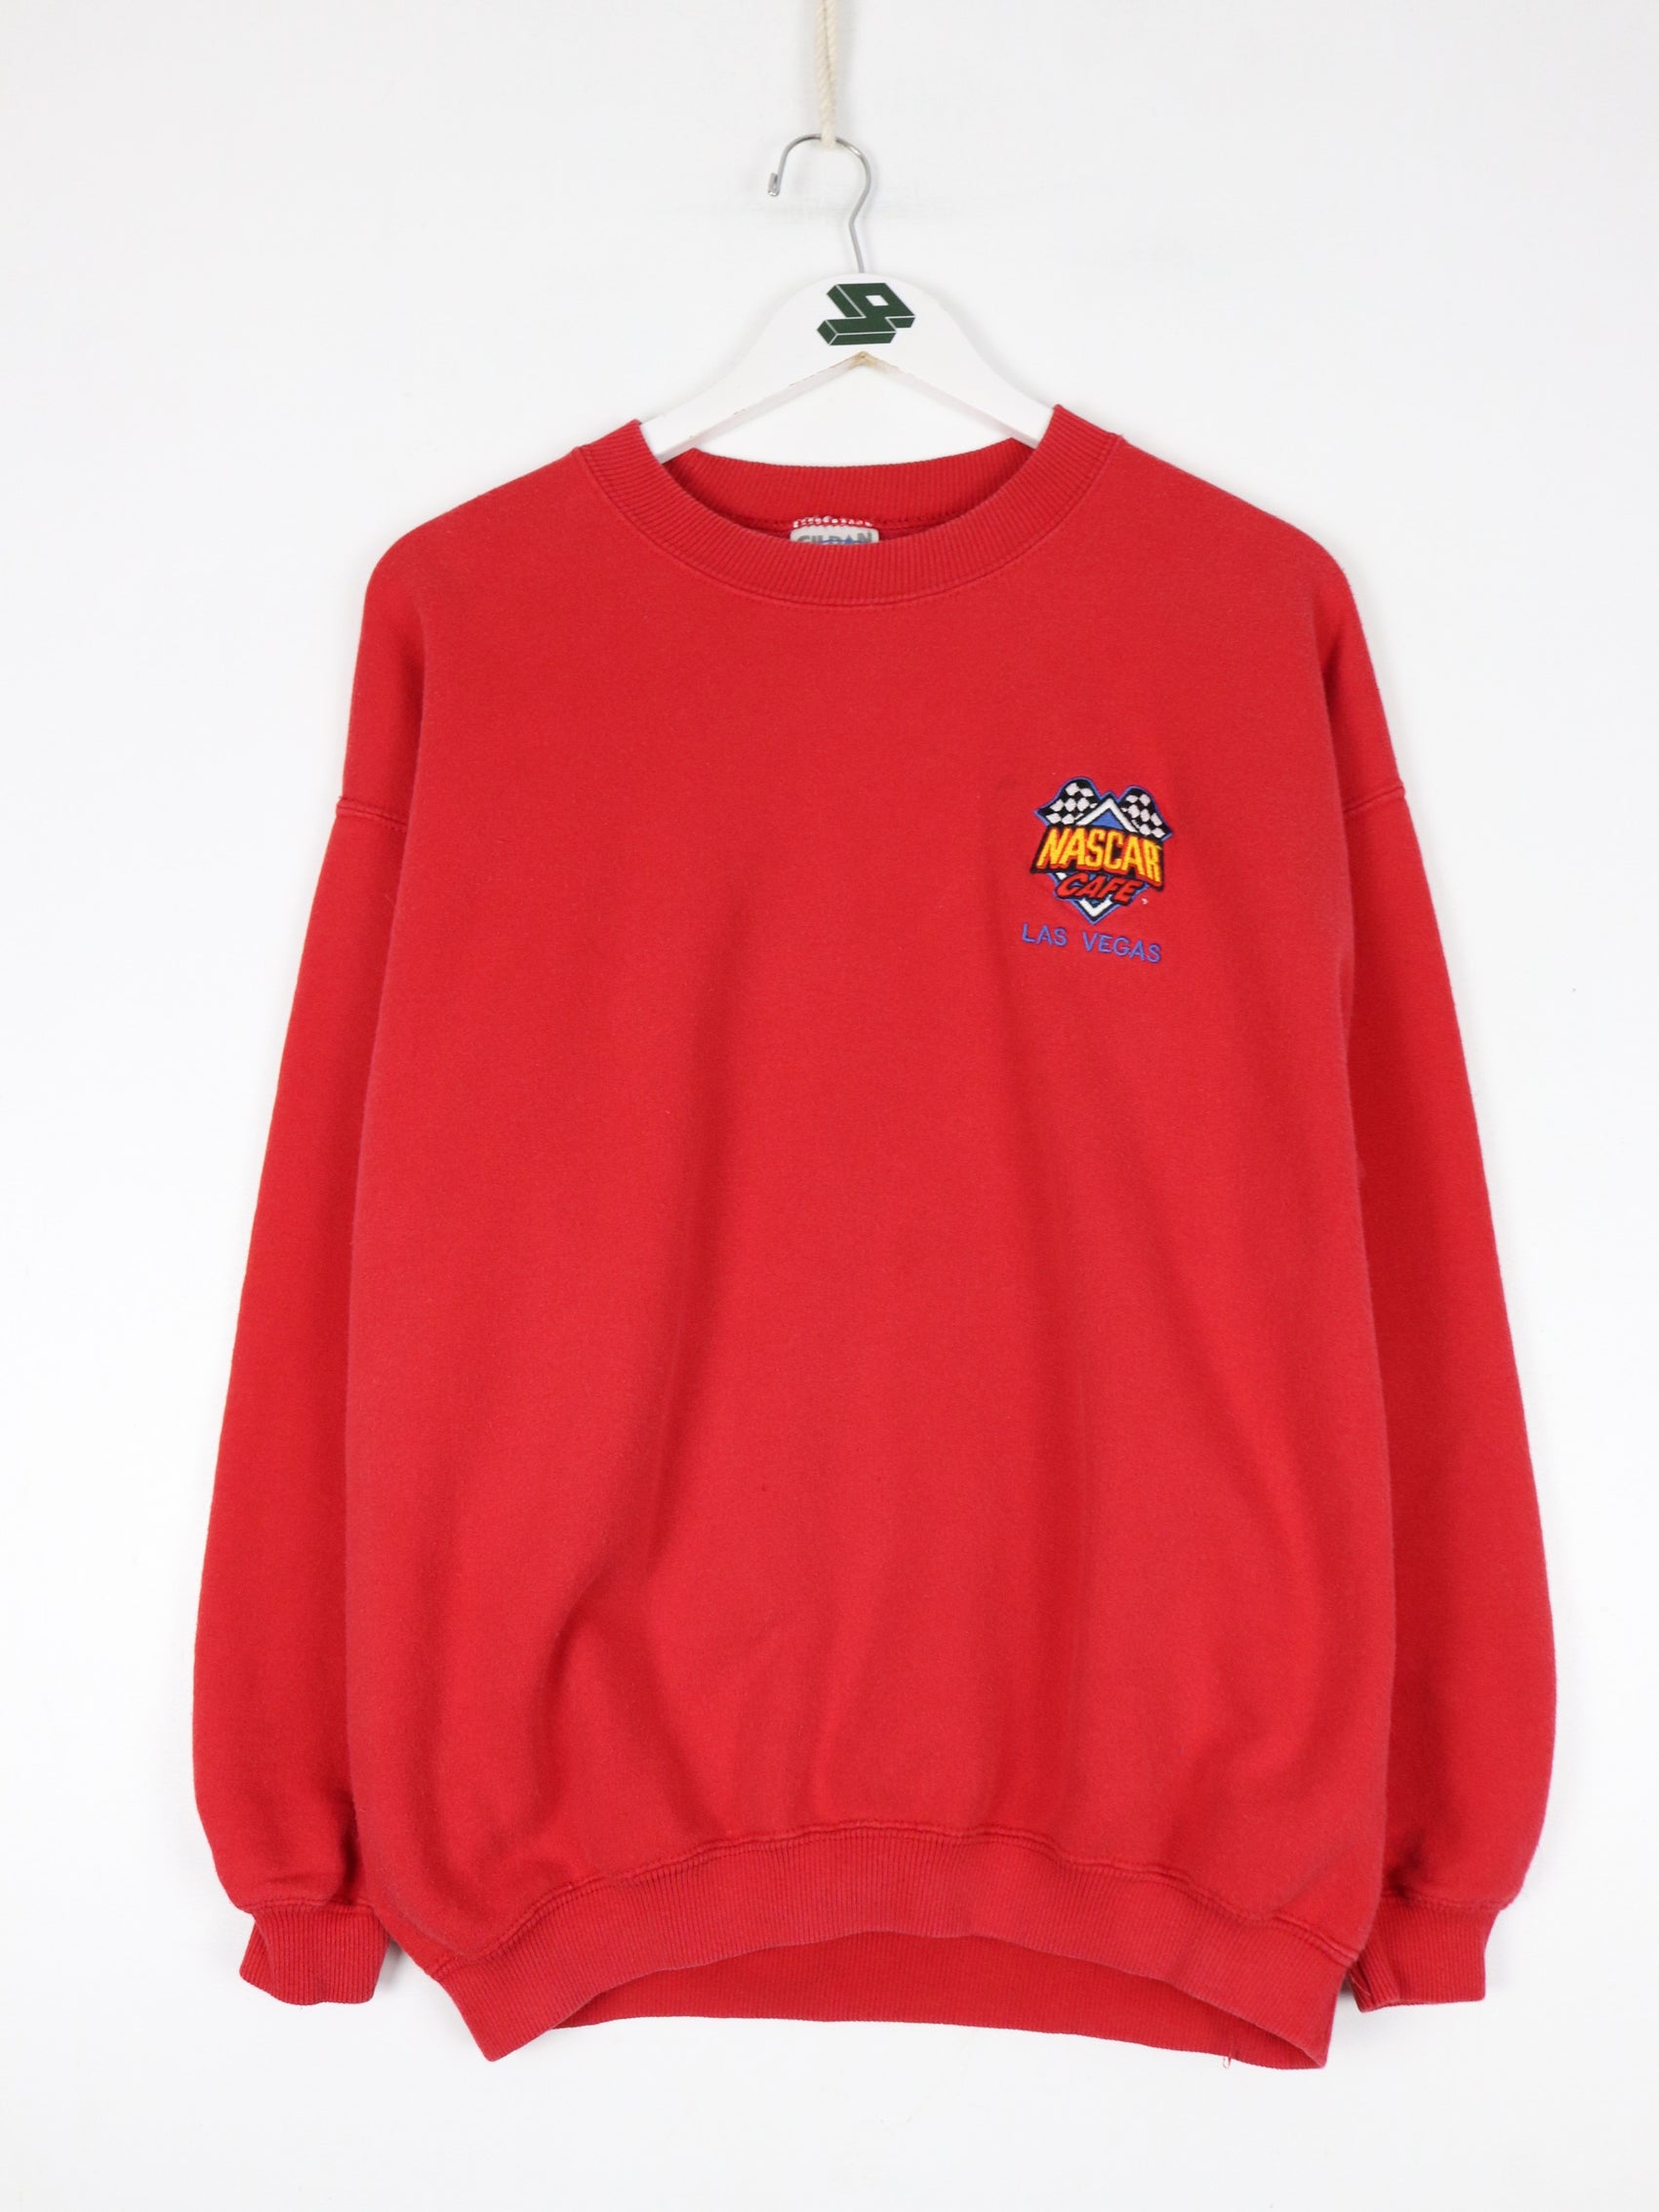 Vintage Nascar Cafe Sweatshirt Fits Mens Medium Red 90s